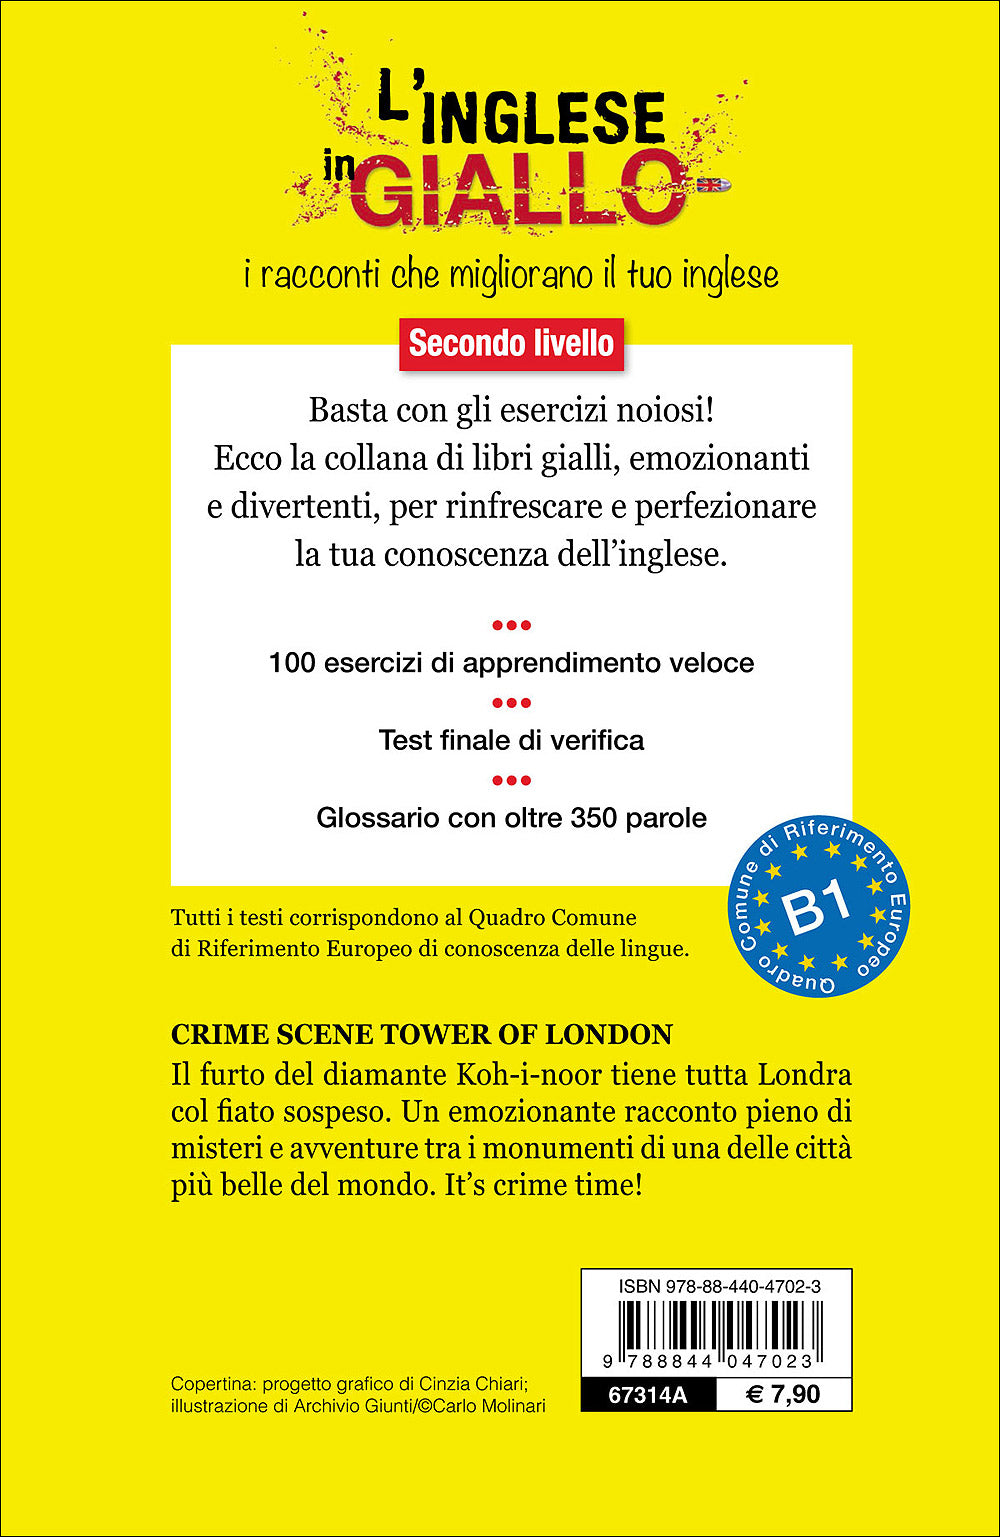 Crime Scene Tower of London::I racconti che migliorano il tuo inglese - Secondo livello